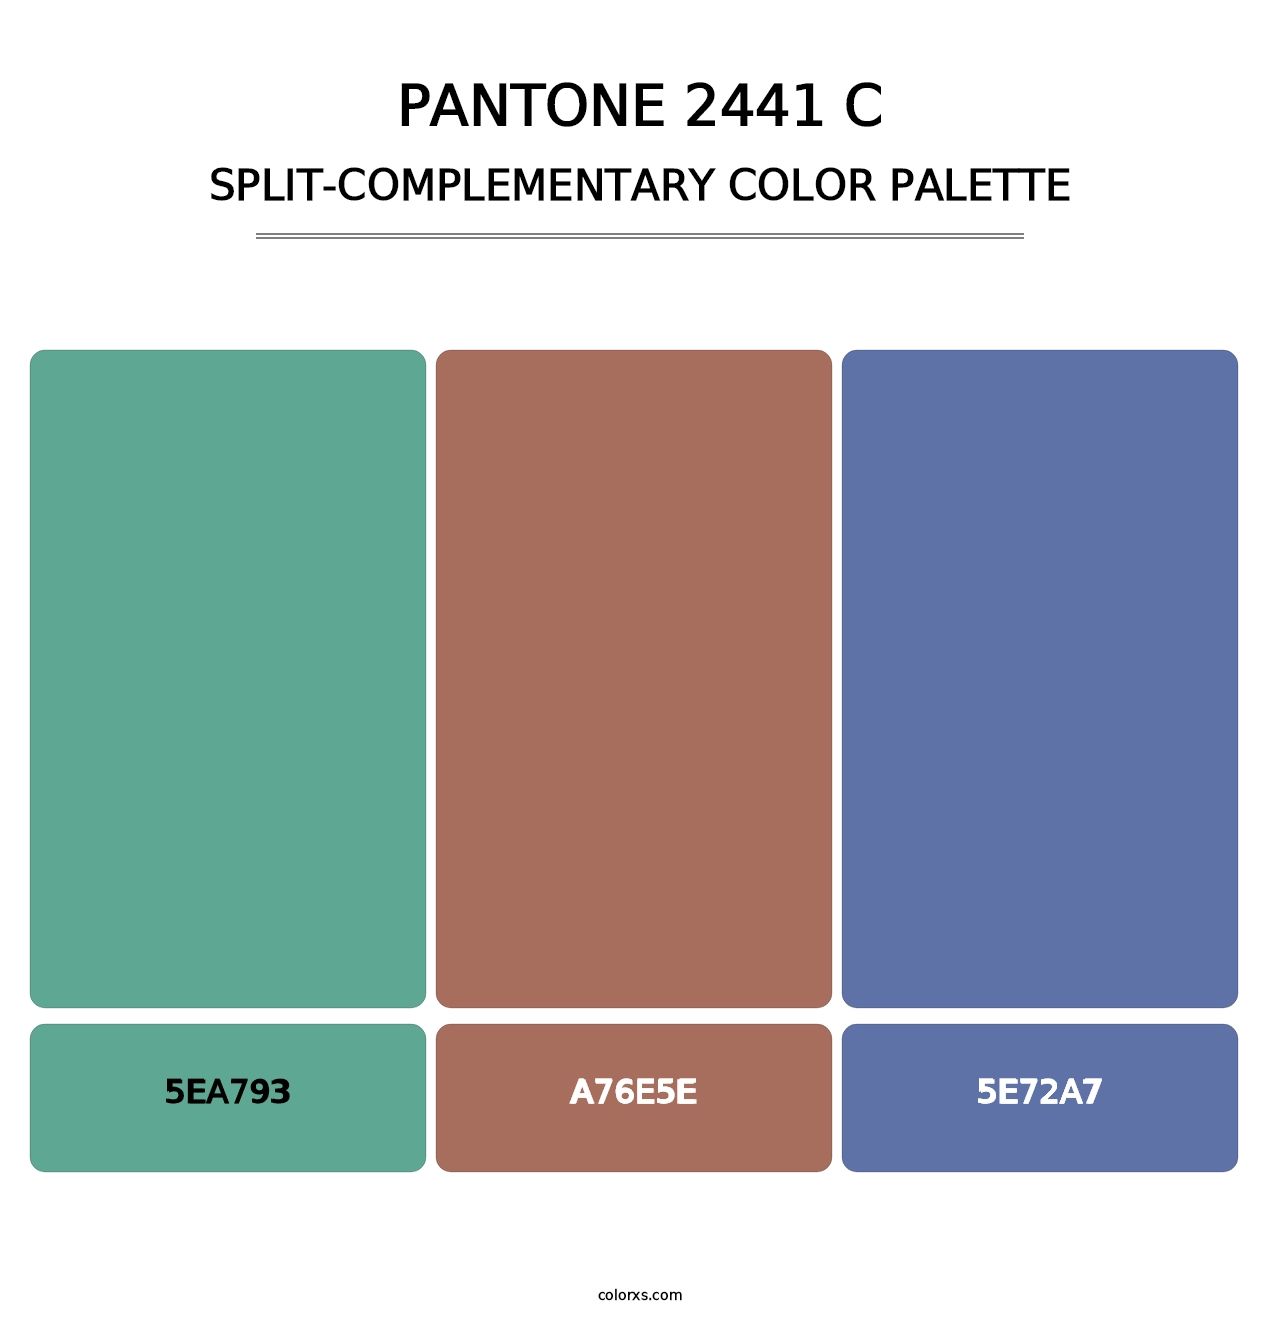 PANTONE 2441 C - Split-Complementary Color Palette